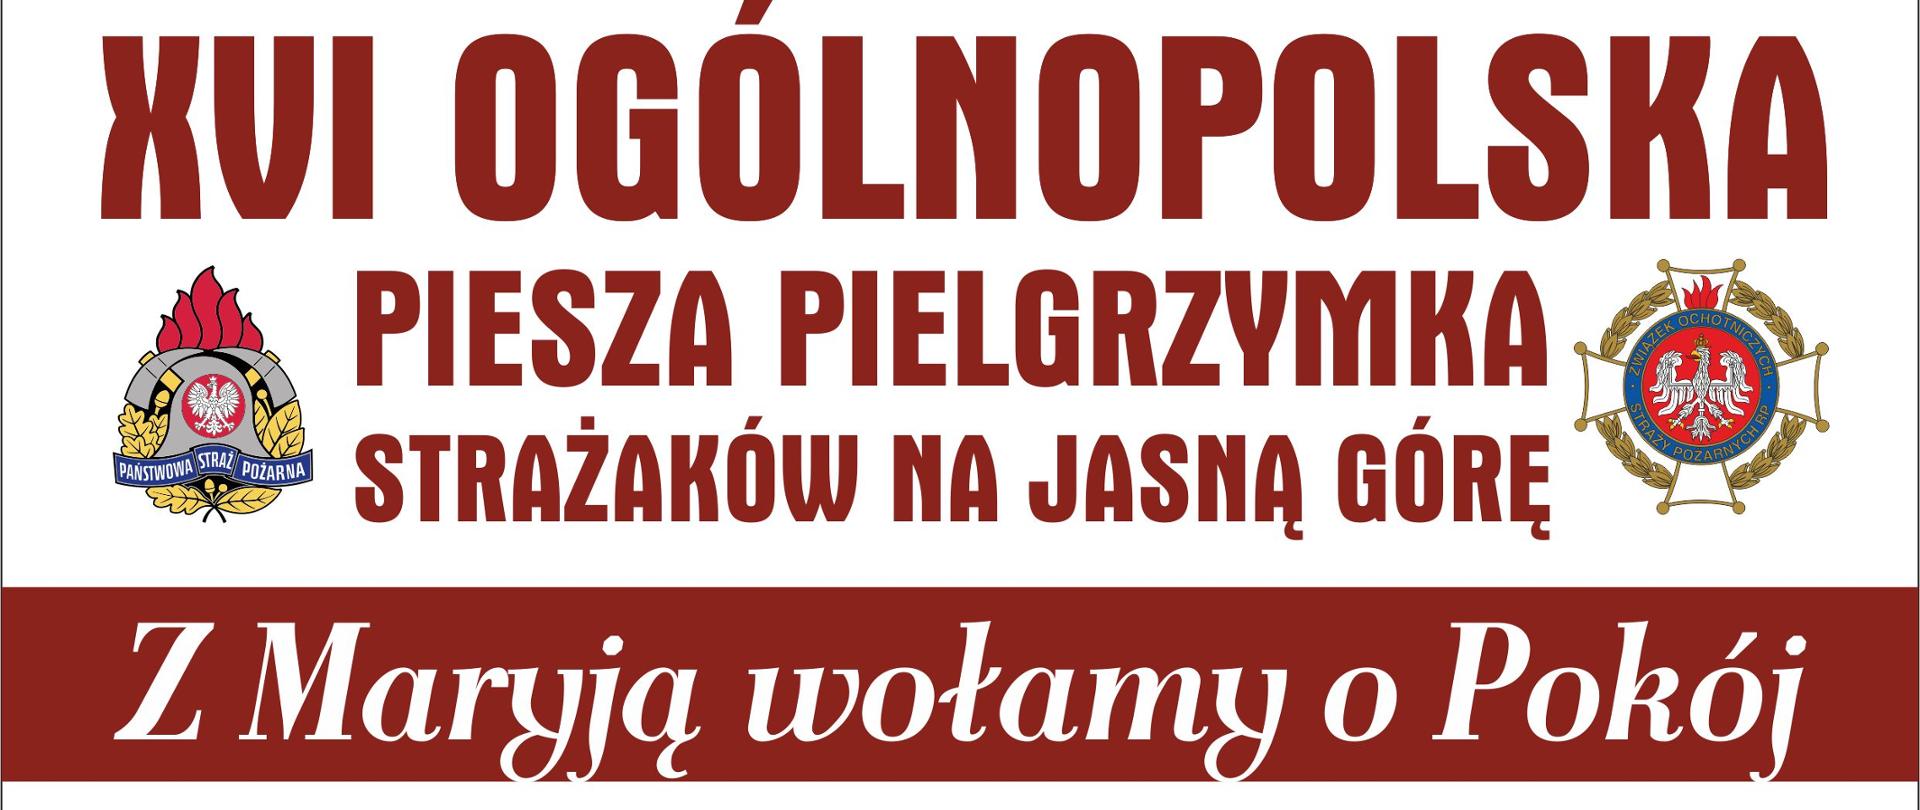 Plakat informacyjny o pielgrzymce strażaków na Jasną Górę. Start 5 sierpnia Warszawa, koniec 14 sierpnia Jasna Góra